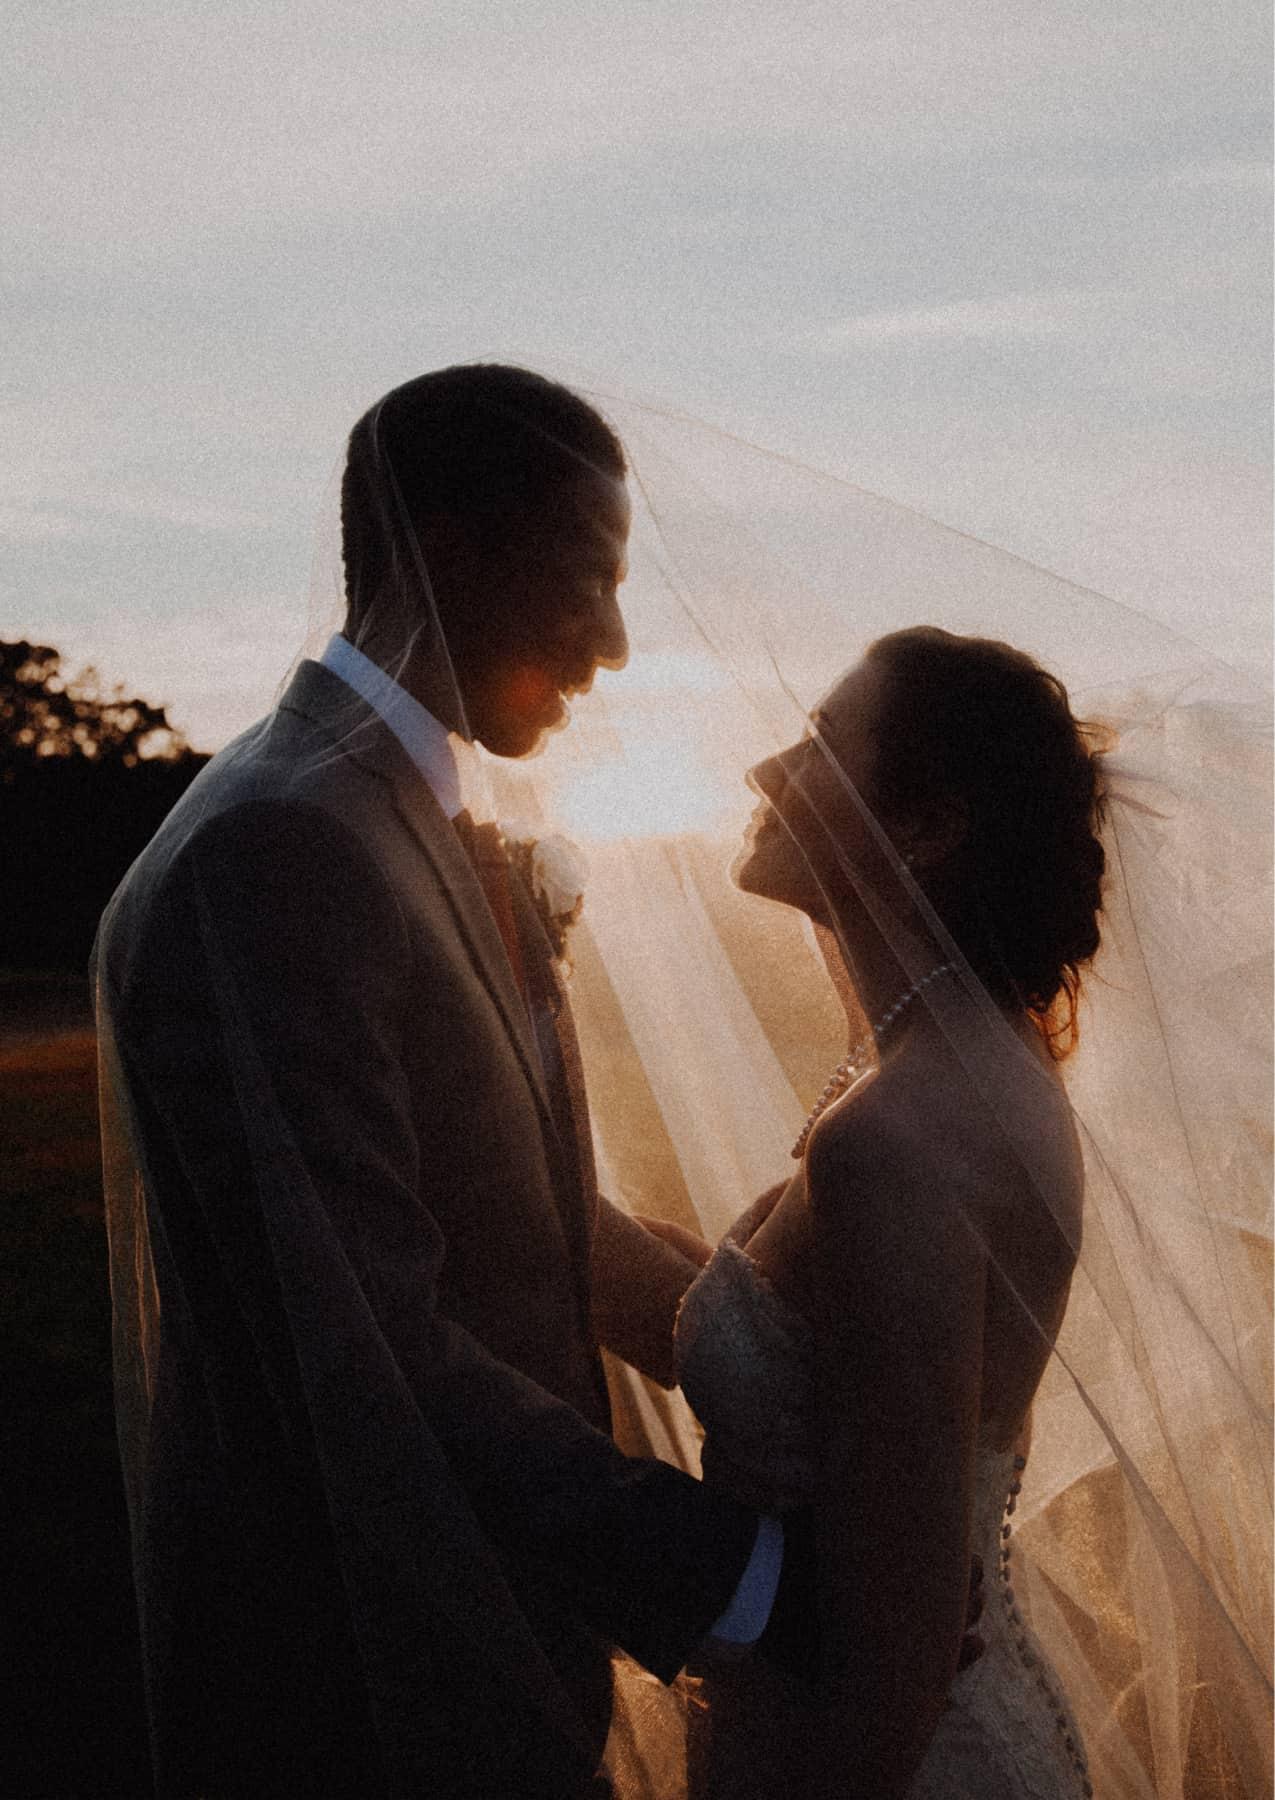 Zwei Menschen in Hochzeitskleidung die sich verliebt anschauen, fotografiert gegen die tiefstehende Herbstsonne